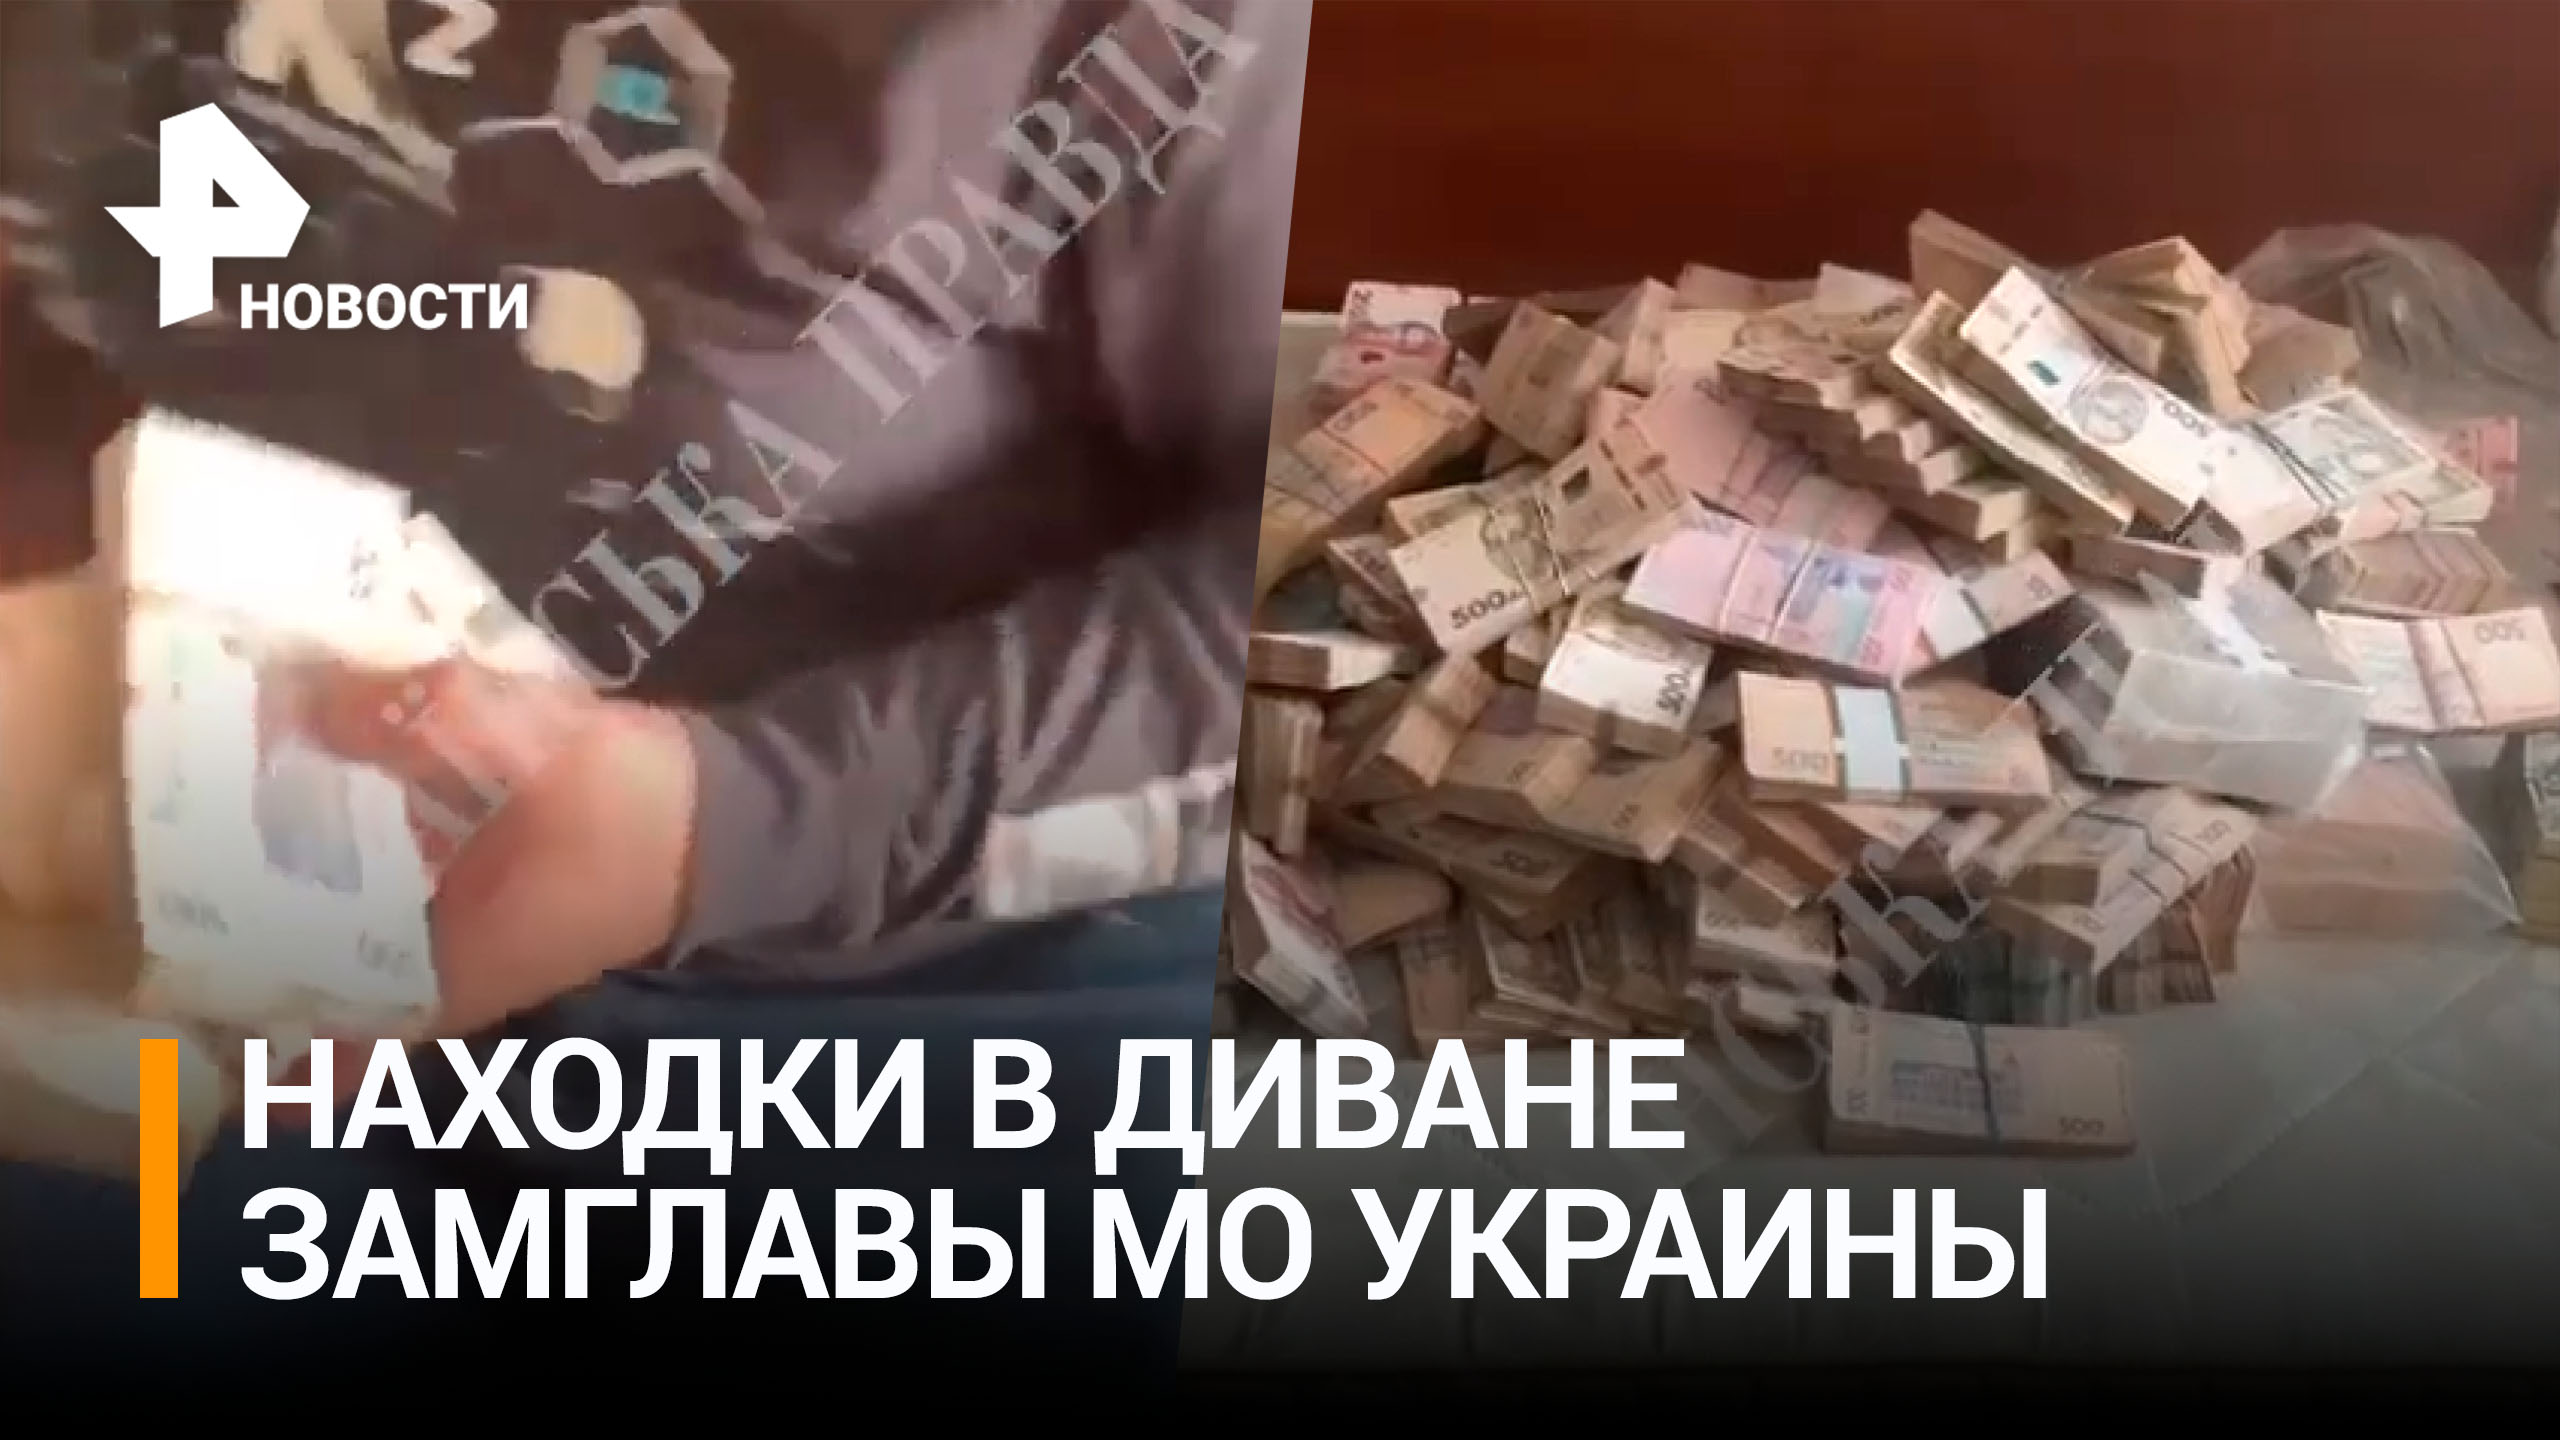 В диване у экс-замглавы Минобороны Украины нашли миллион долларов / РЕН Новости